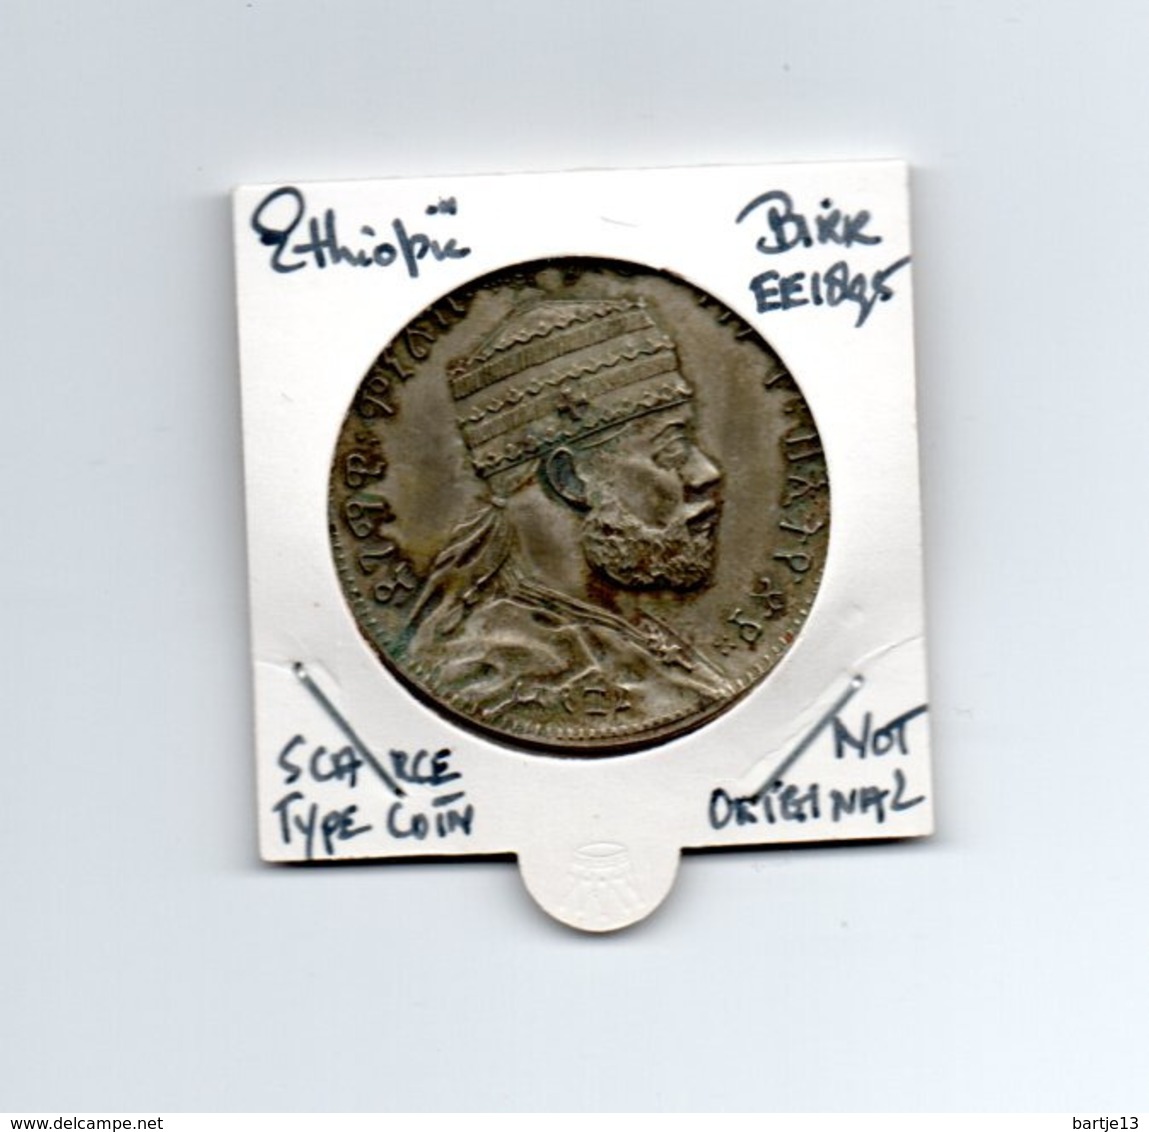 ETHIOPIE BIRR EE1895 TYPE COIN SCARCE - NOT ORIGINAL - - Ethiopia